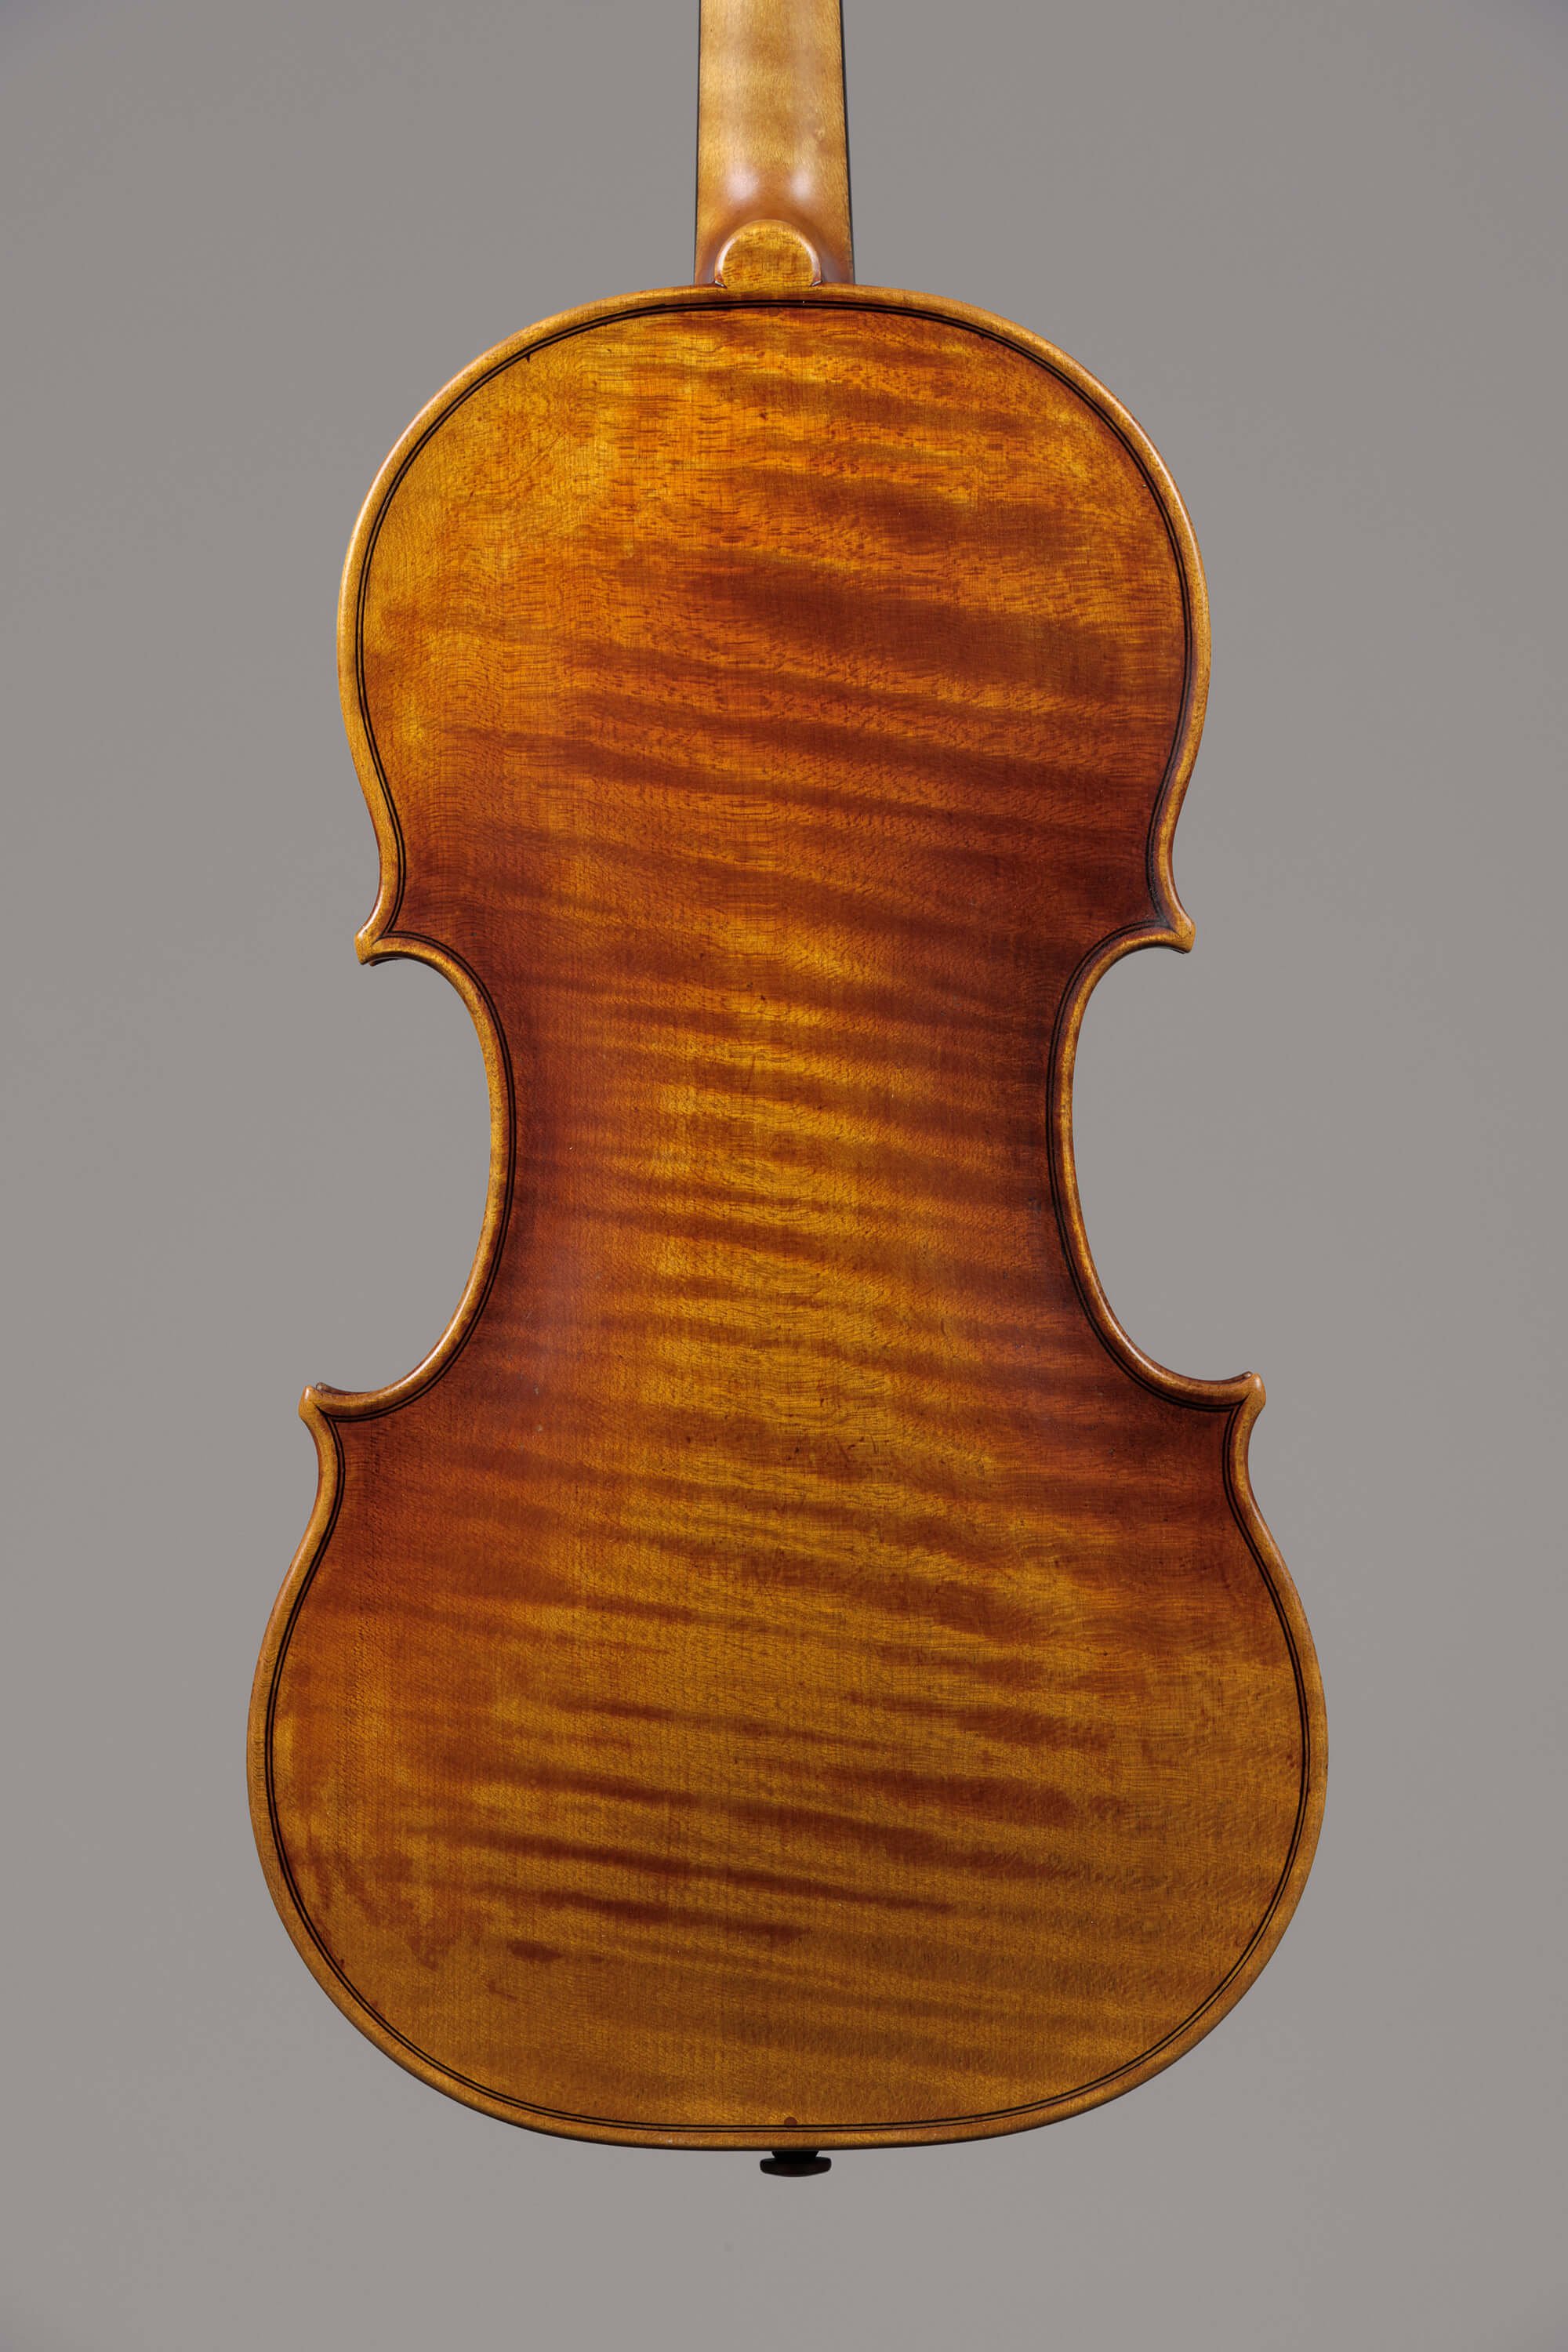 Contemporary Violin